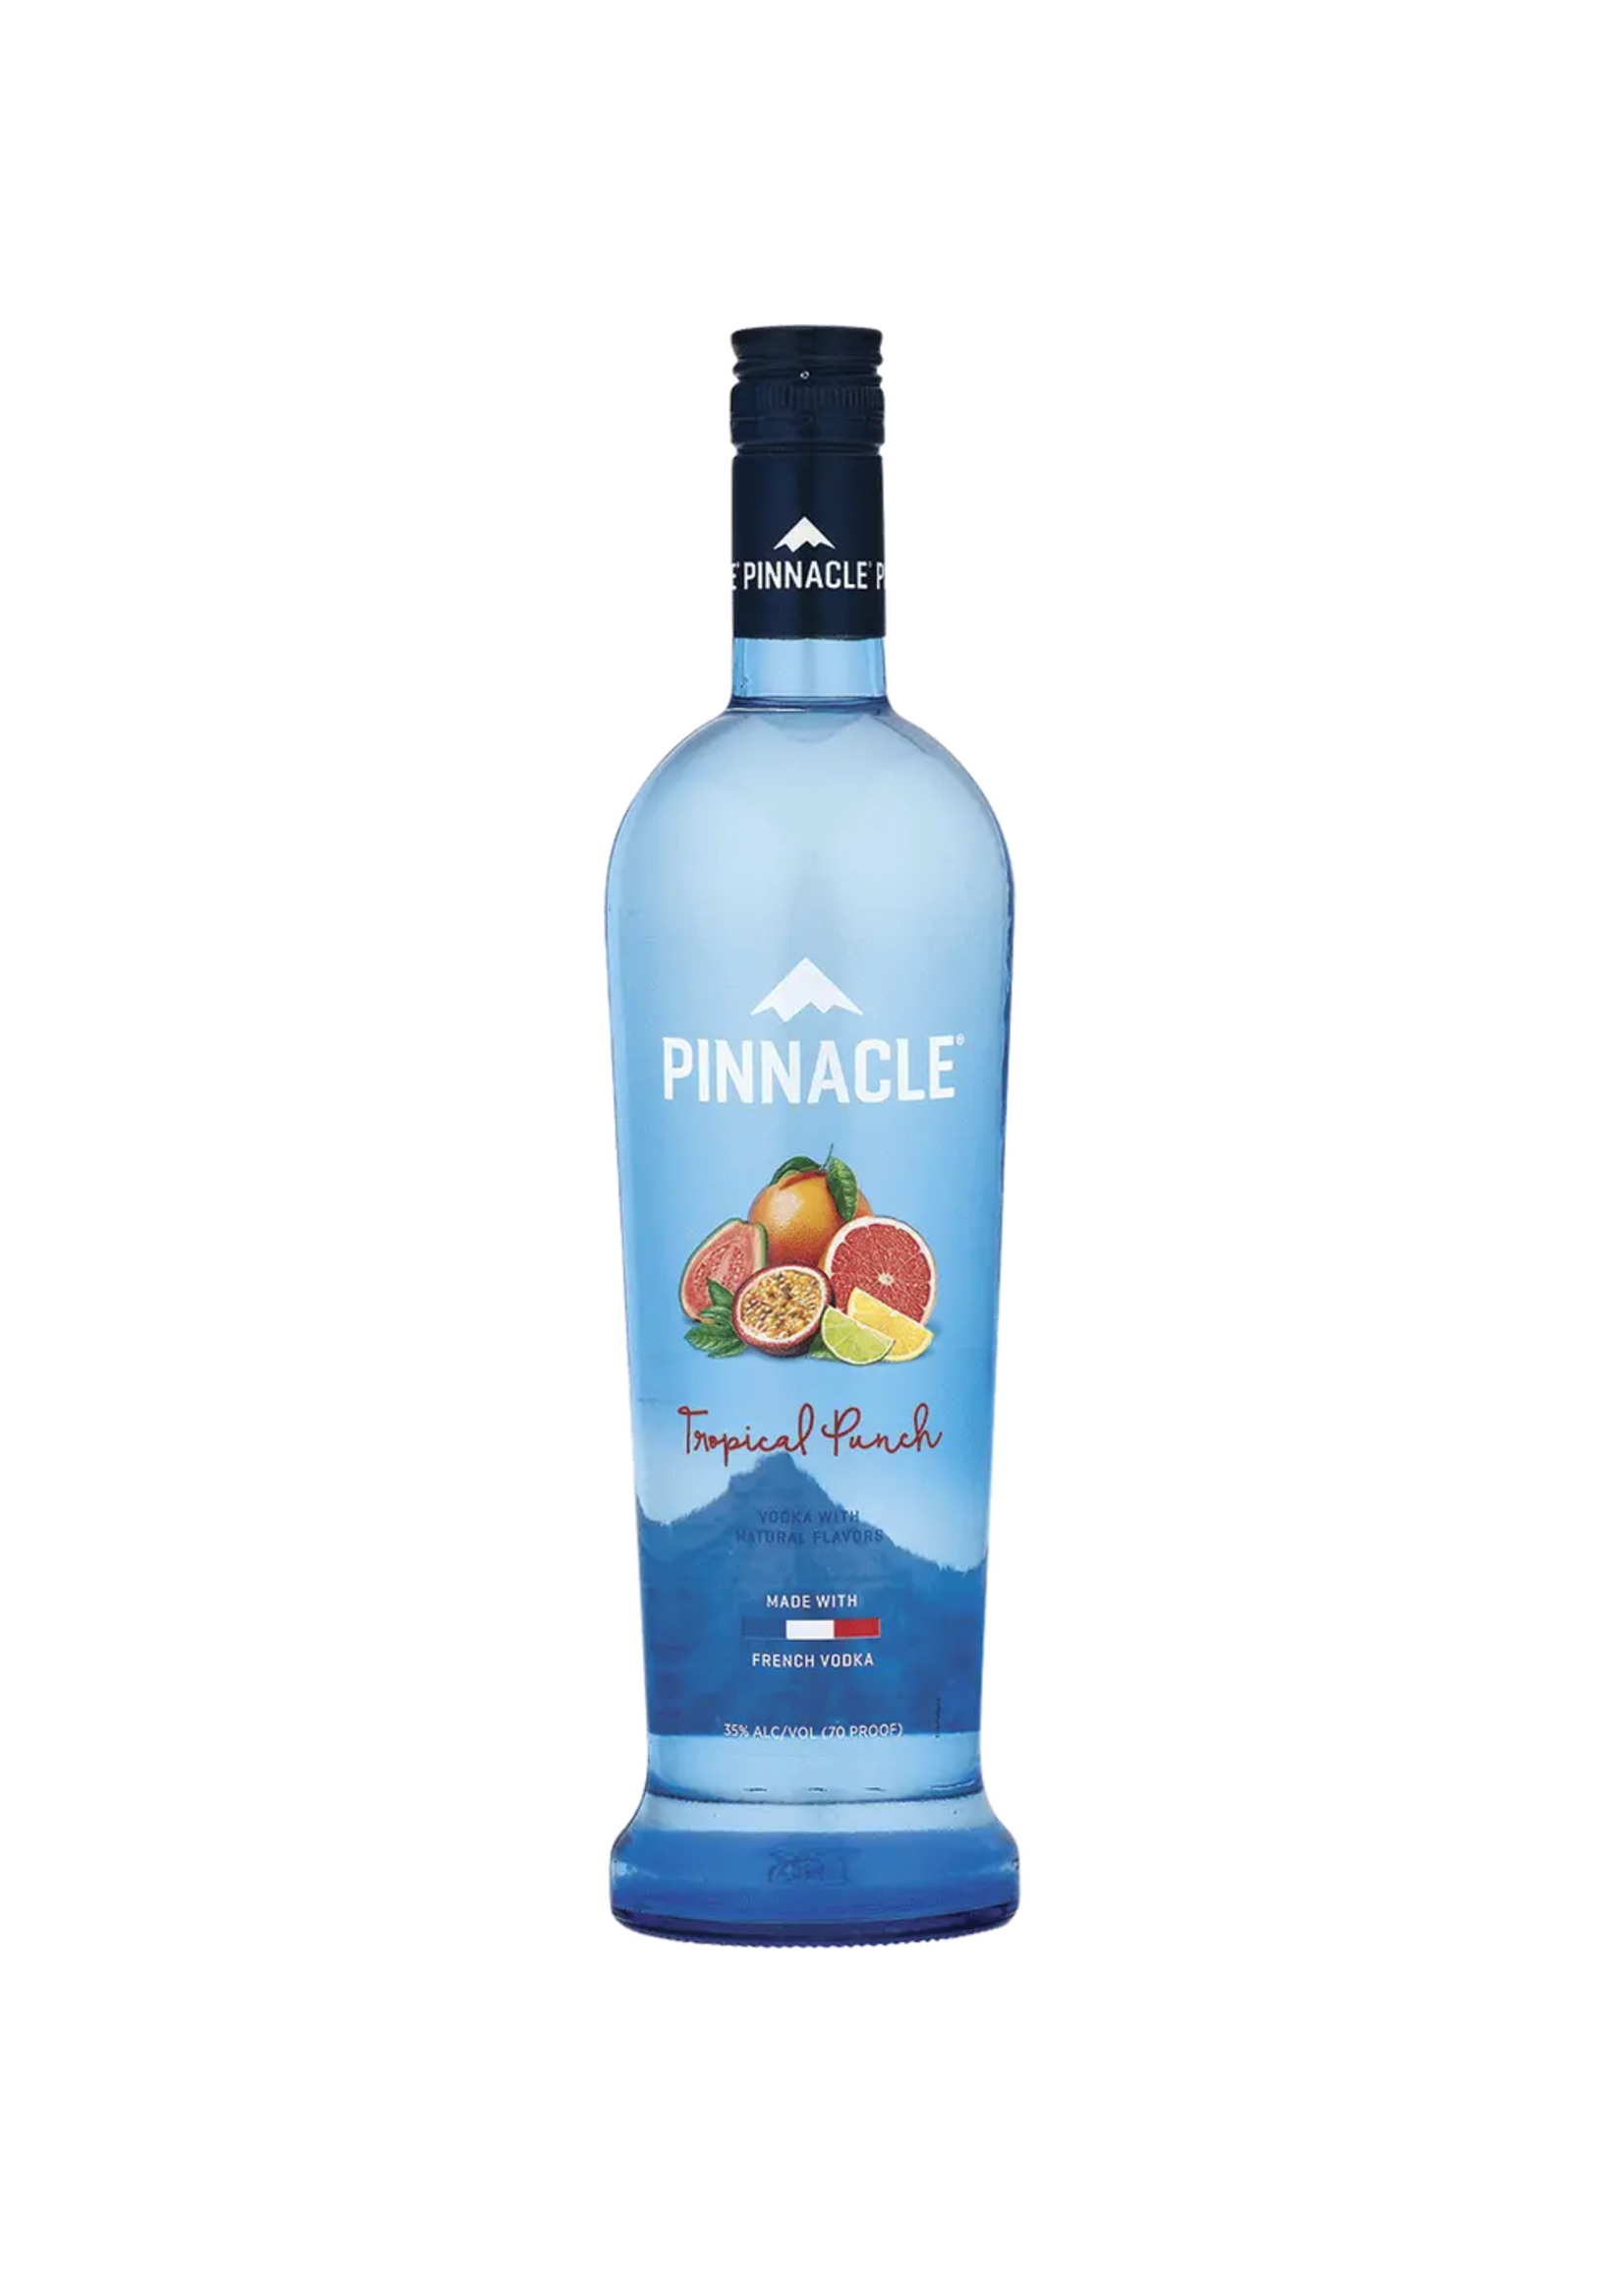 Pinnacle Pinnacle Tropical Punch Flavored Vodka 60Proof 750ml